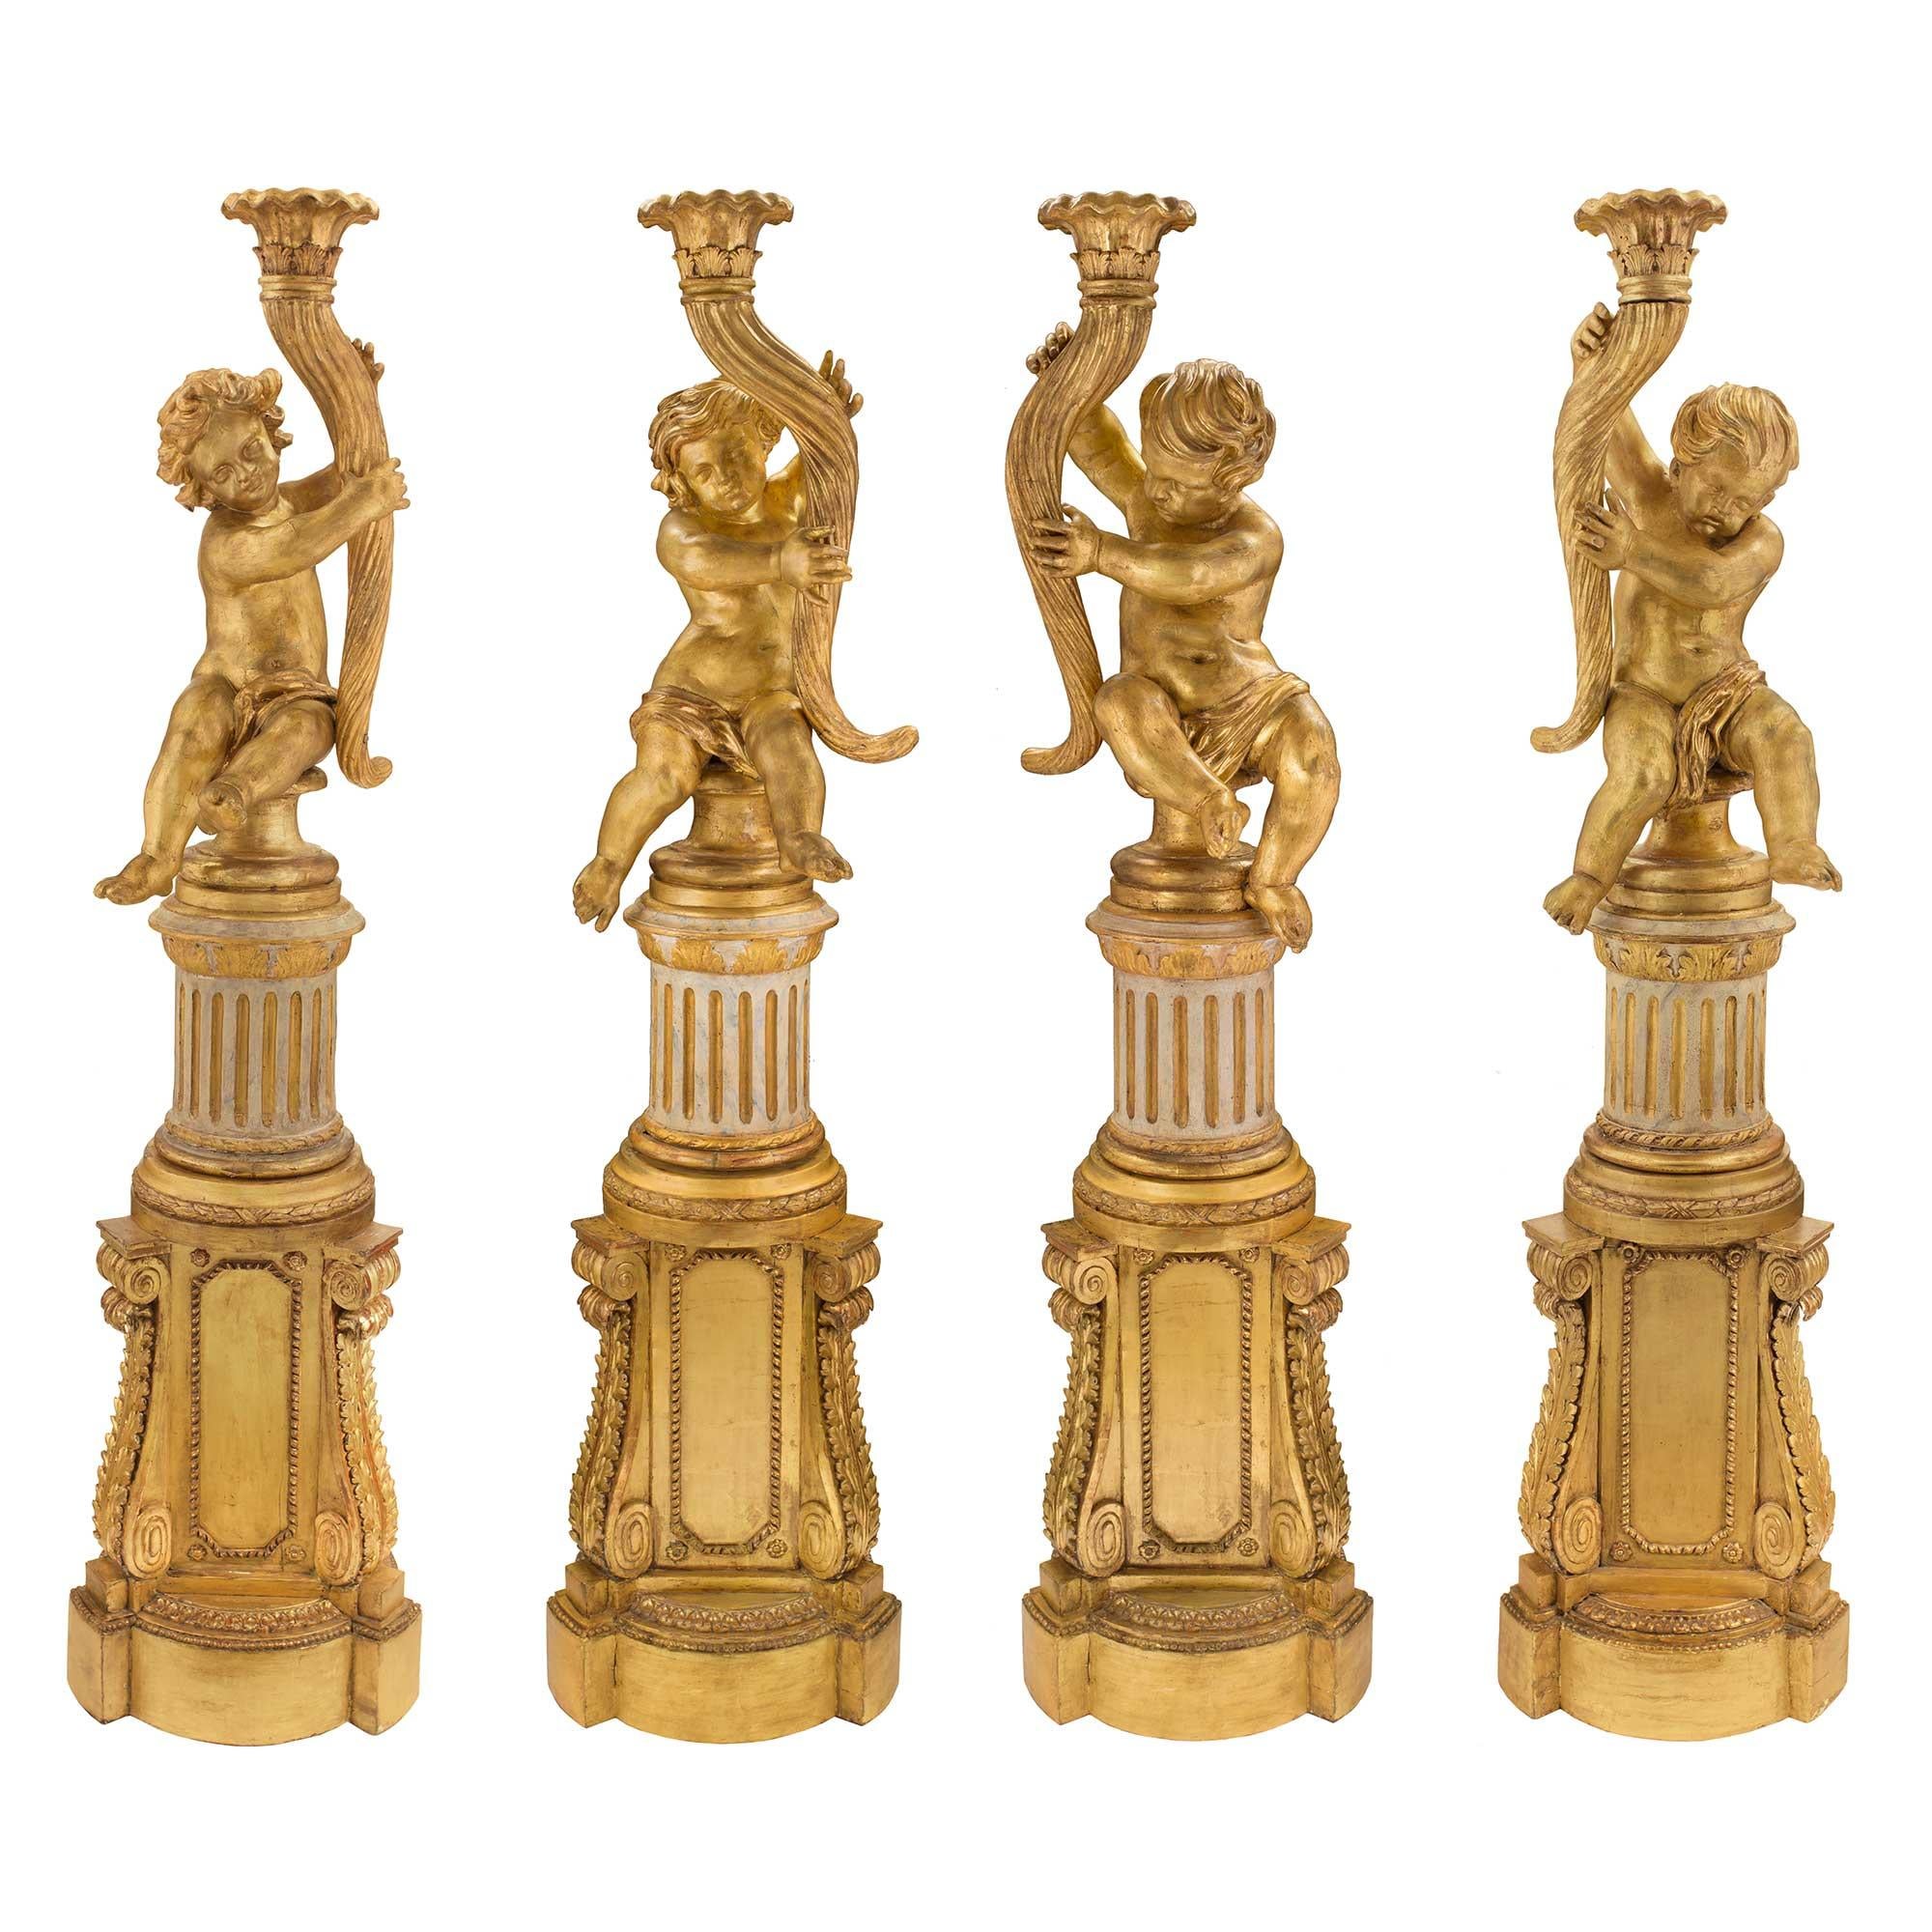 Un ensemble sensationnel et extrêmement décoratif de quatre Torchières italiennes du XVIIIe siècle d'époque Louis XVI, patinées en blanc cassé et en bois doré, avec des chérubins. Chacun d'entre eux est surmonté d'impressionnants piédestaux dorés